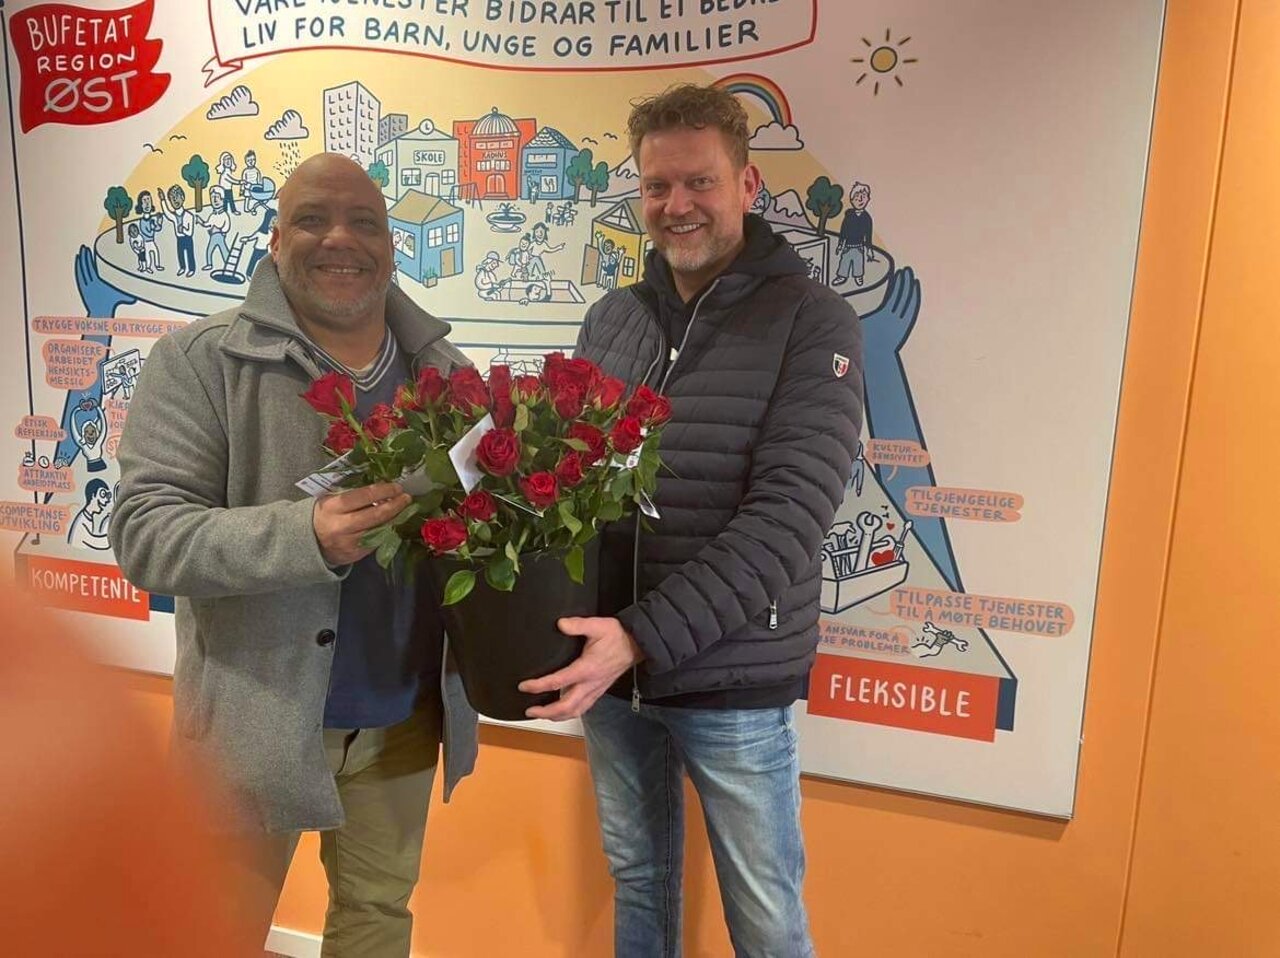 John og Sverre delte ut roser hos Bufetat